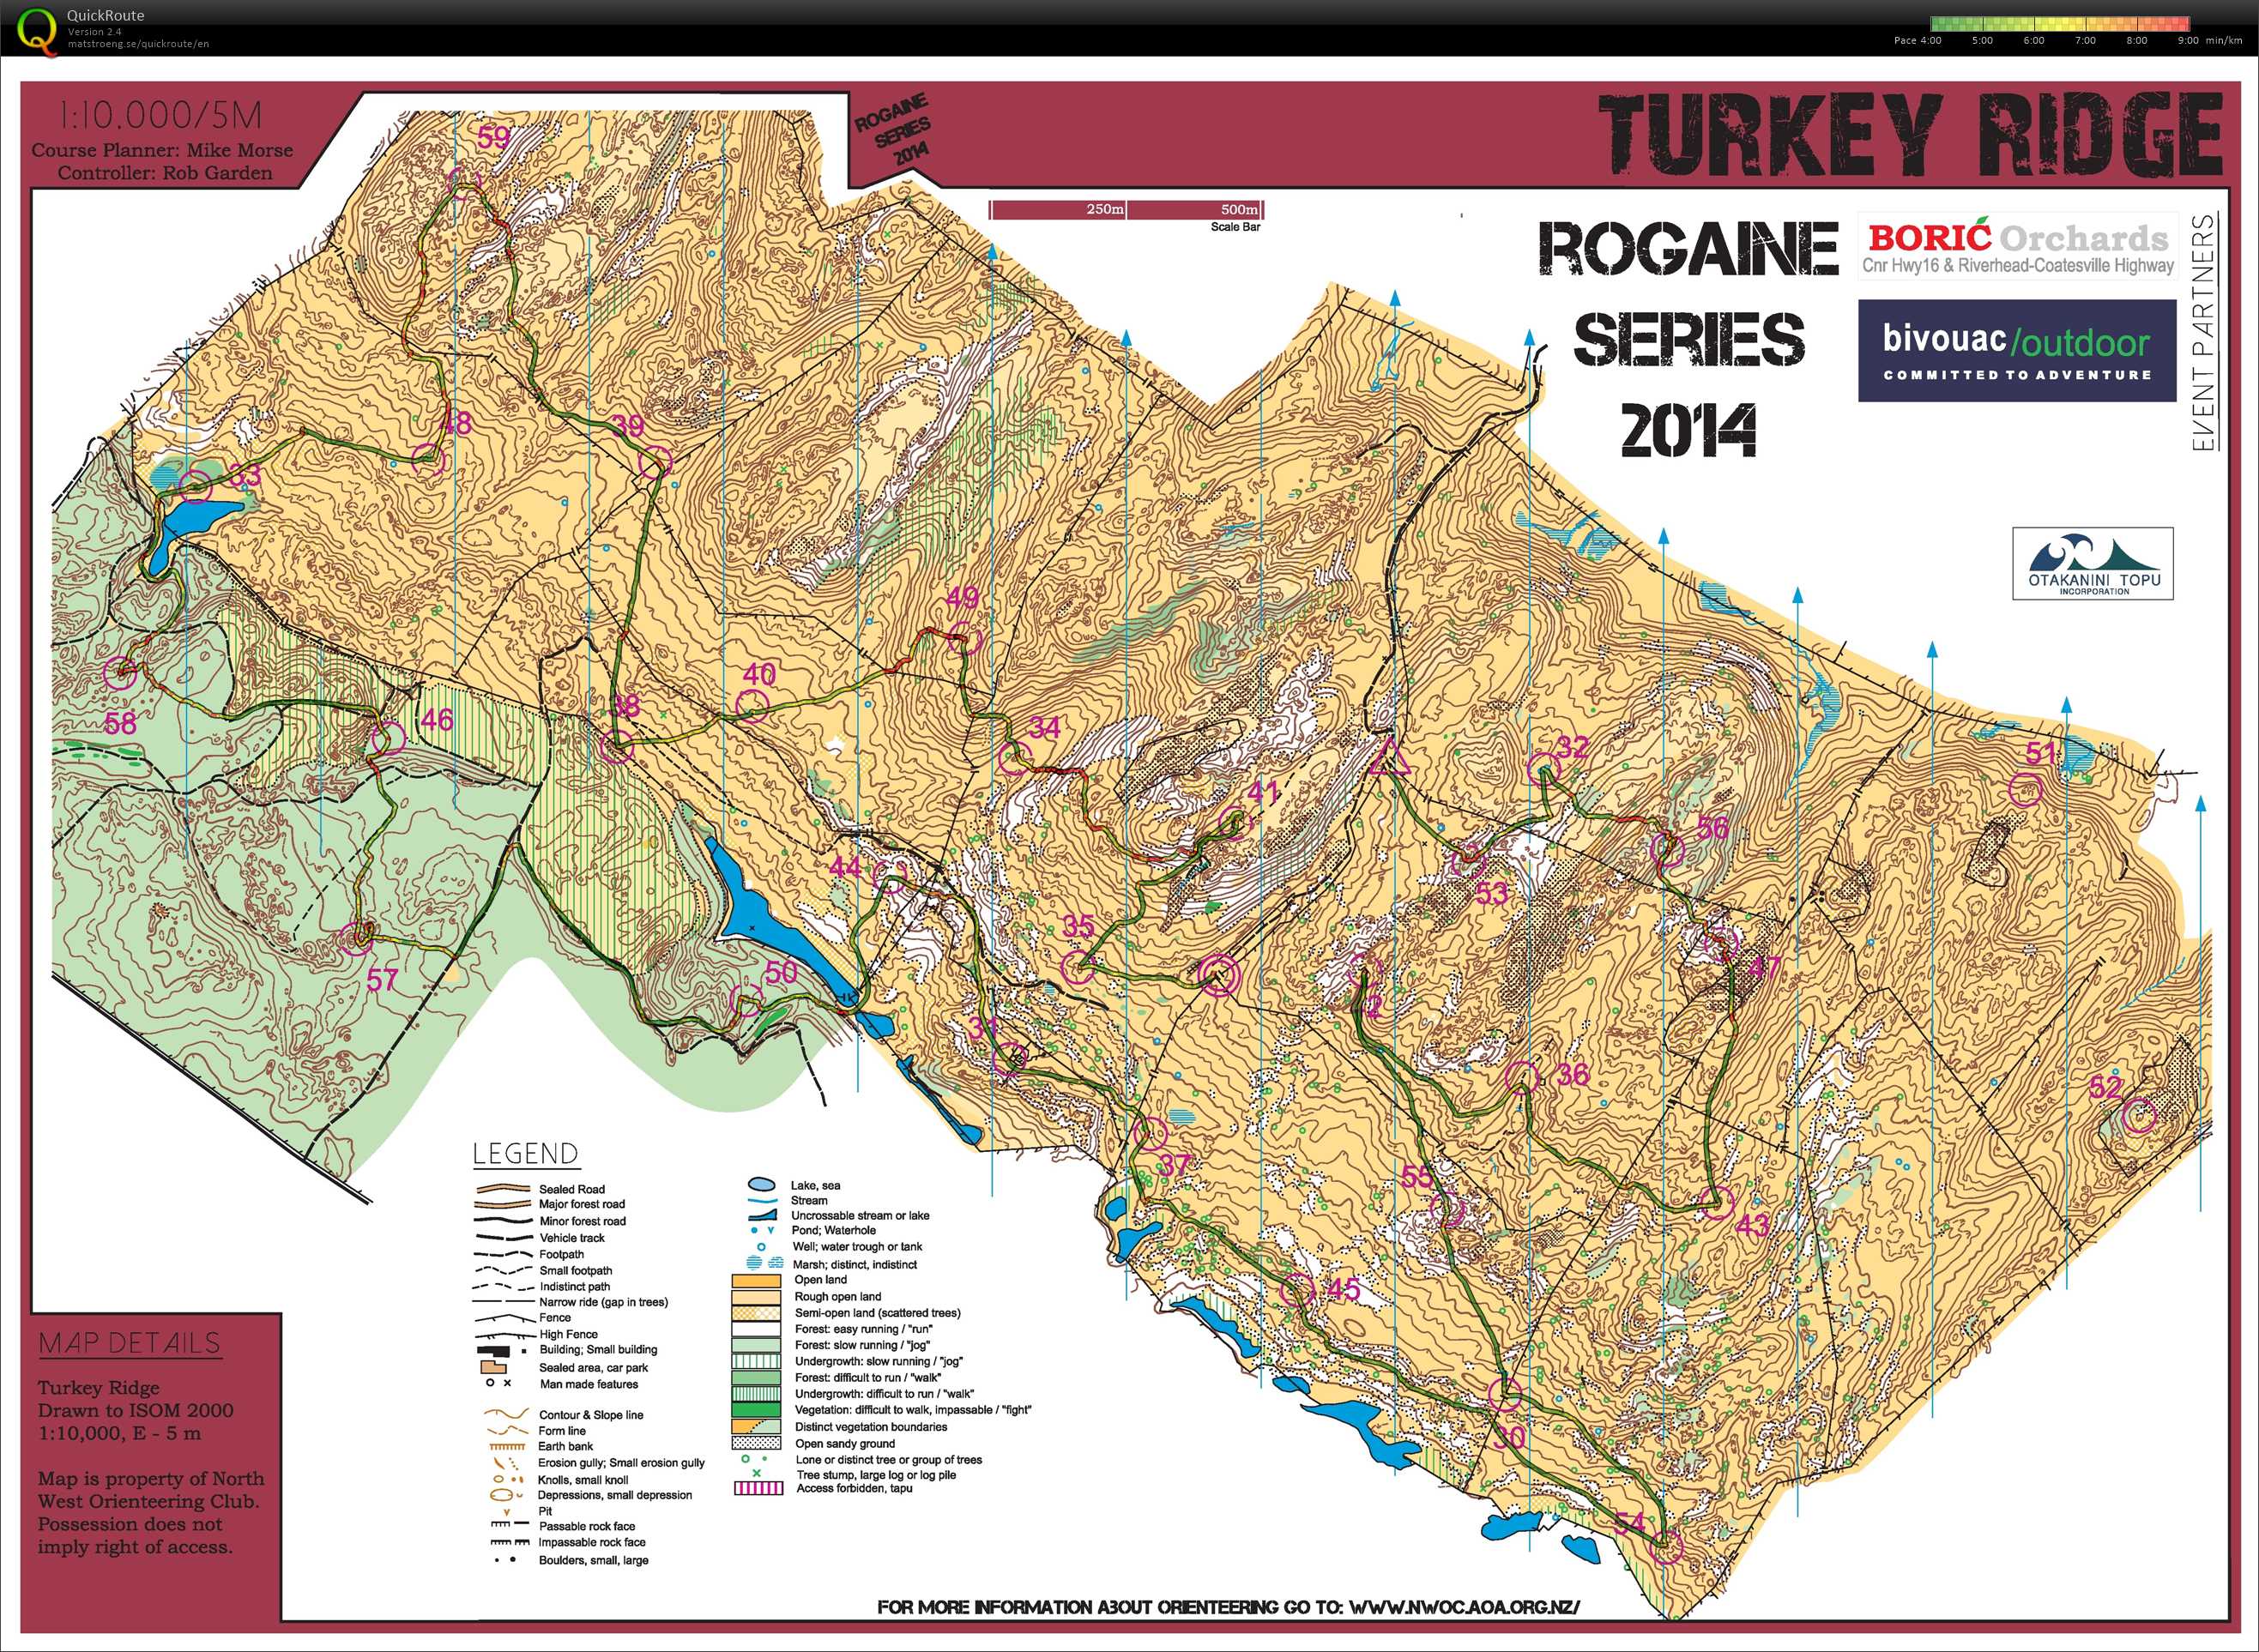 Rogaine Series Part 2 - Turkey Ridge (10/05/2014)